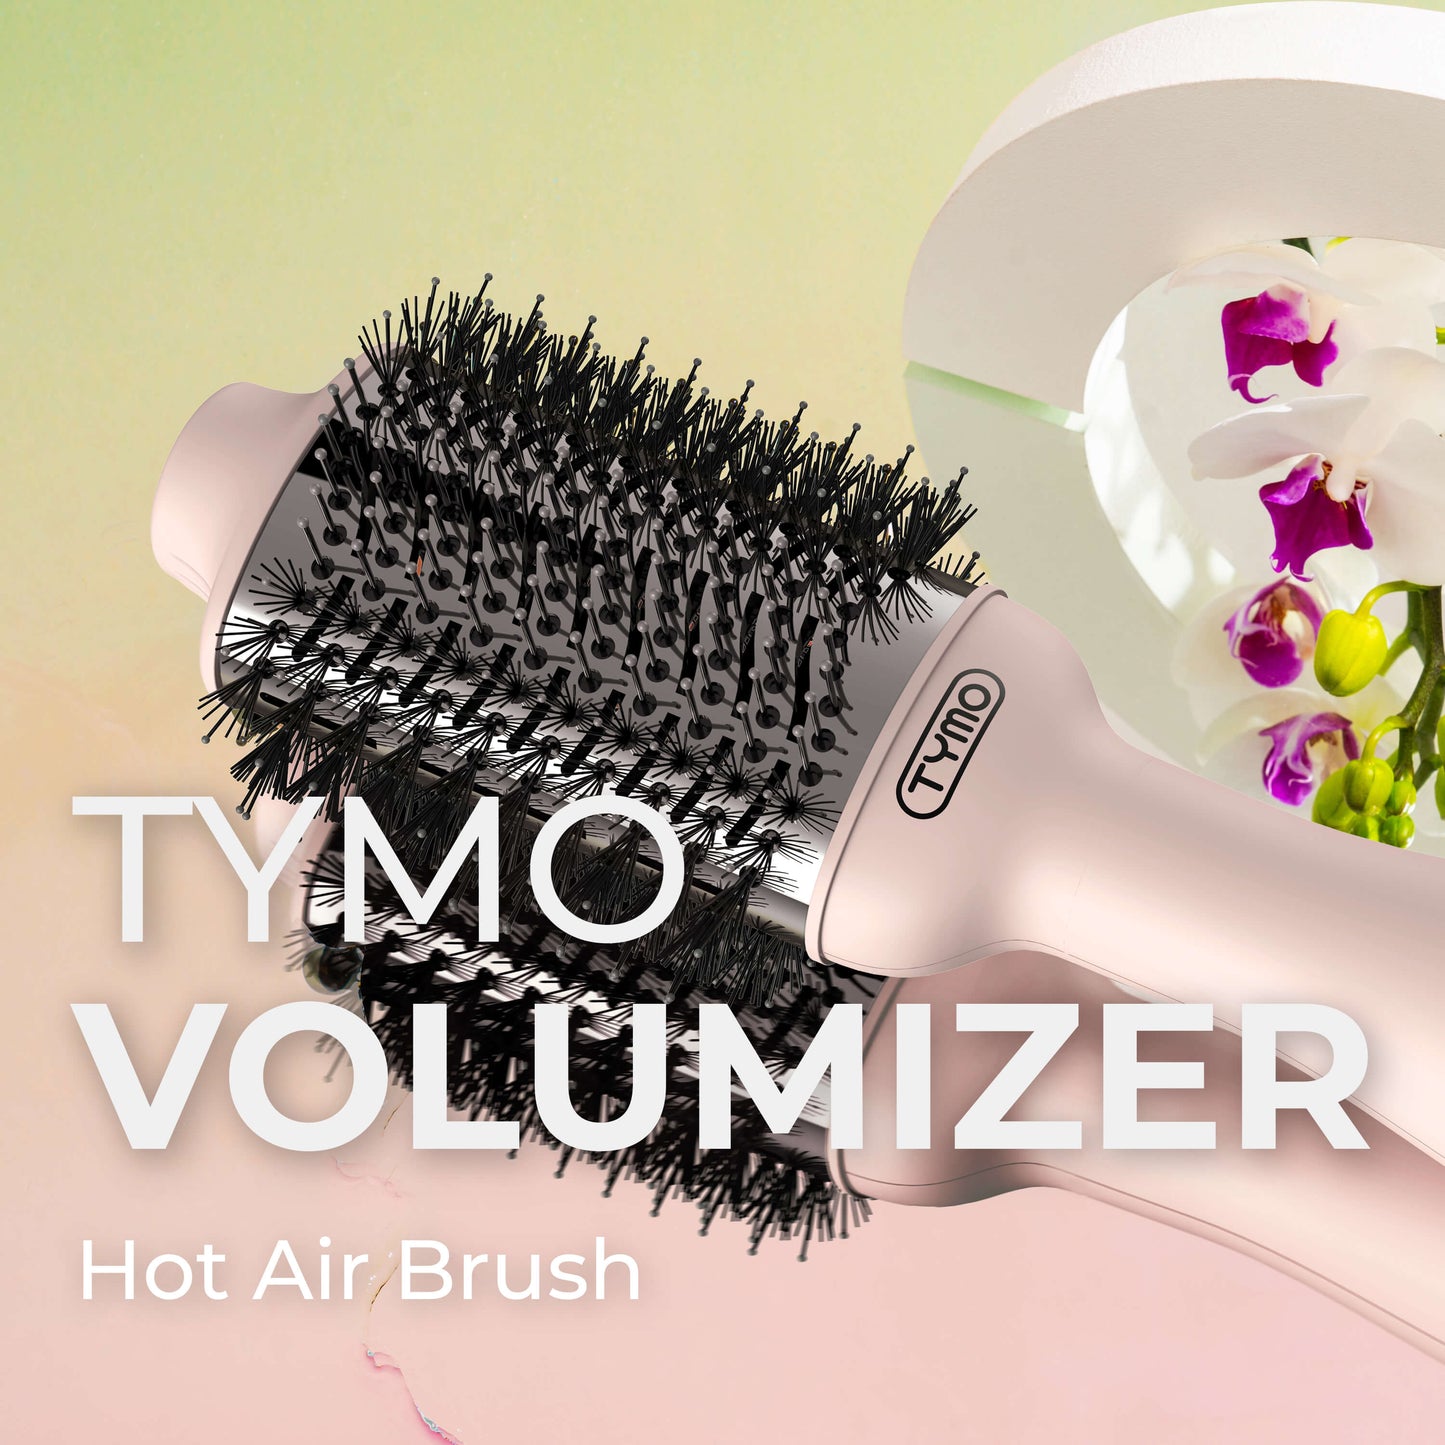 tymo Hair Dryer Brush - TYMO Ionic Blow Dryer Brush & Volumizer